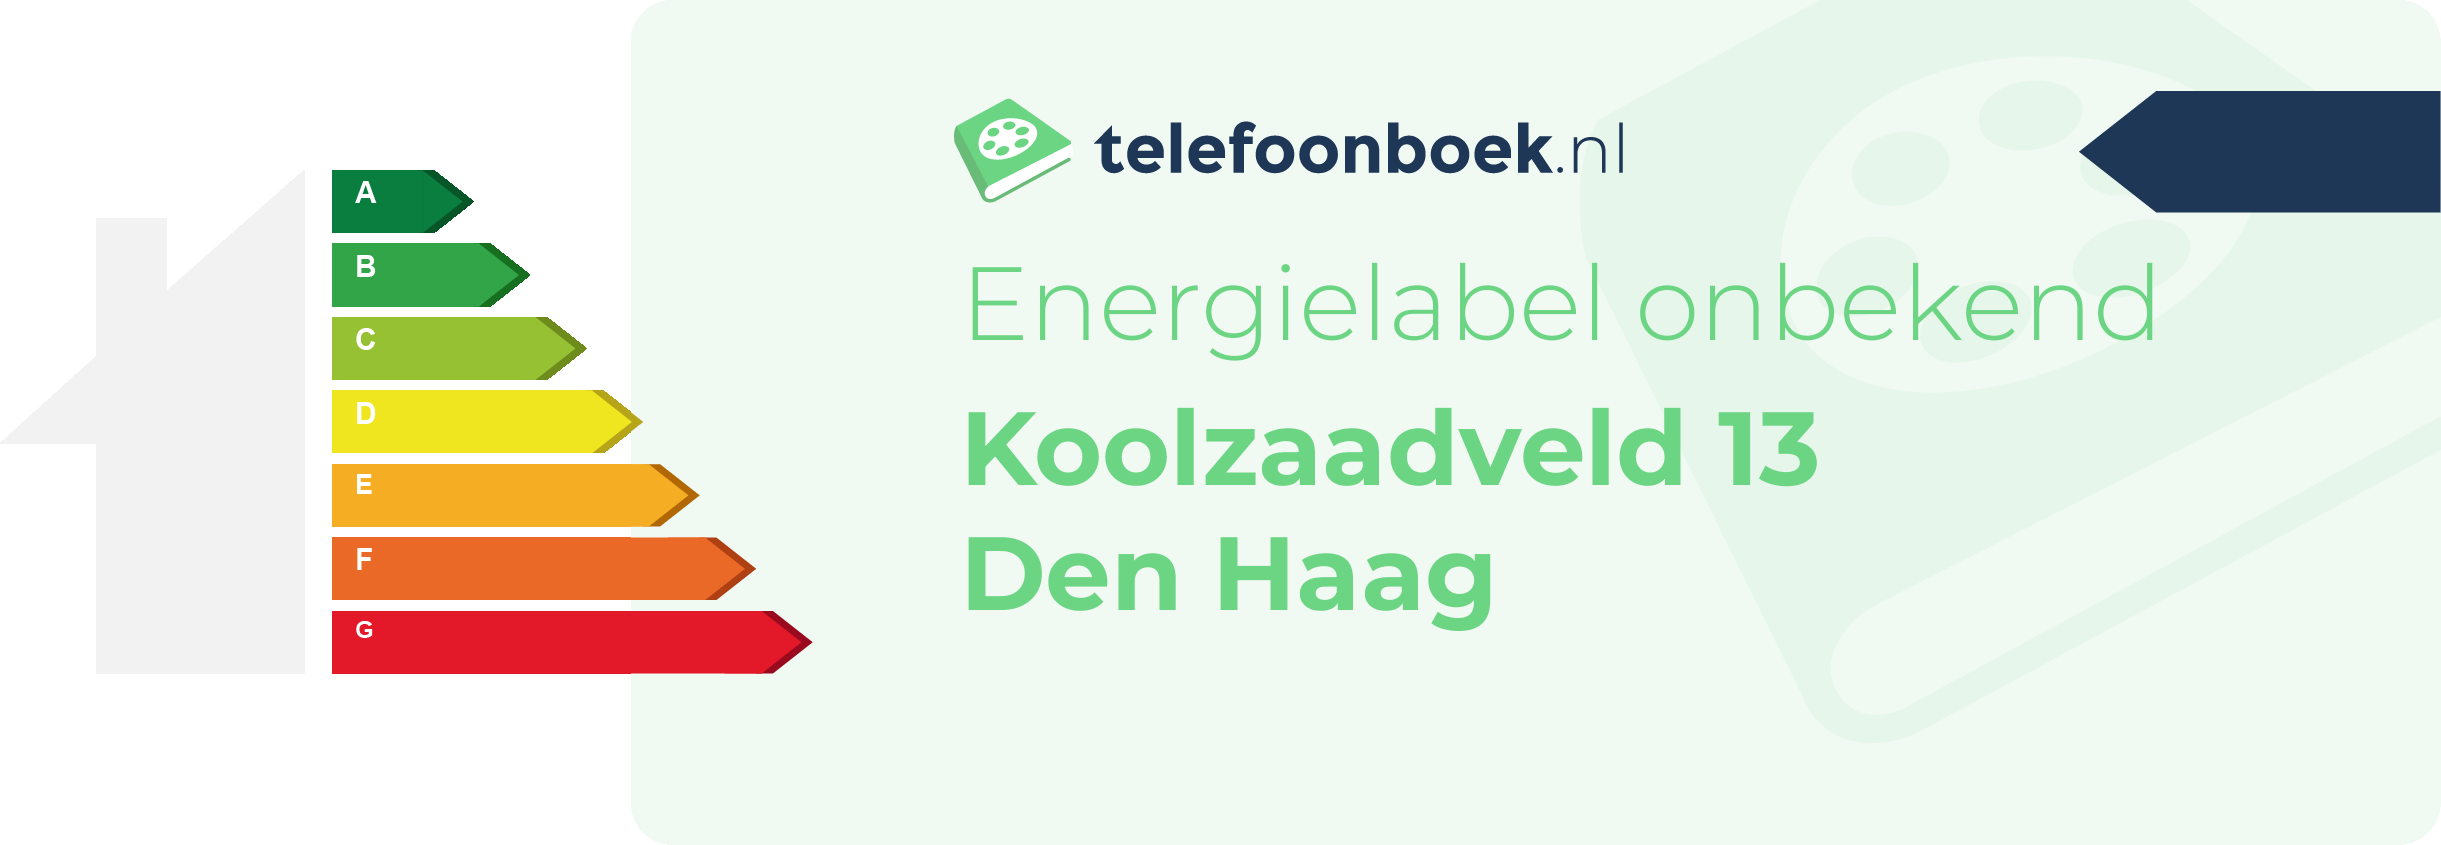 Energielabel Koolzaadveld 13 Den Haag